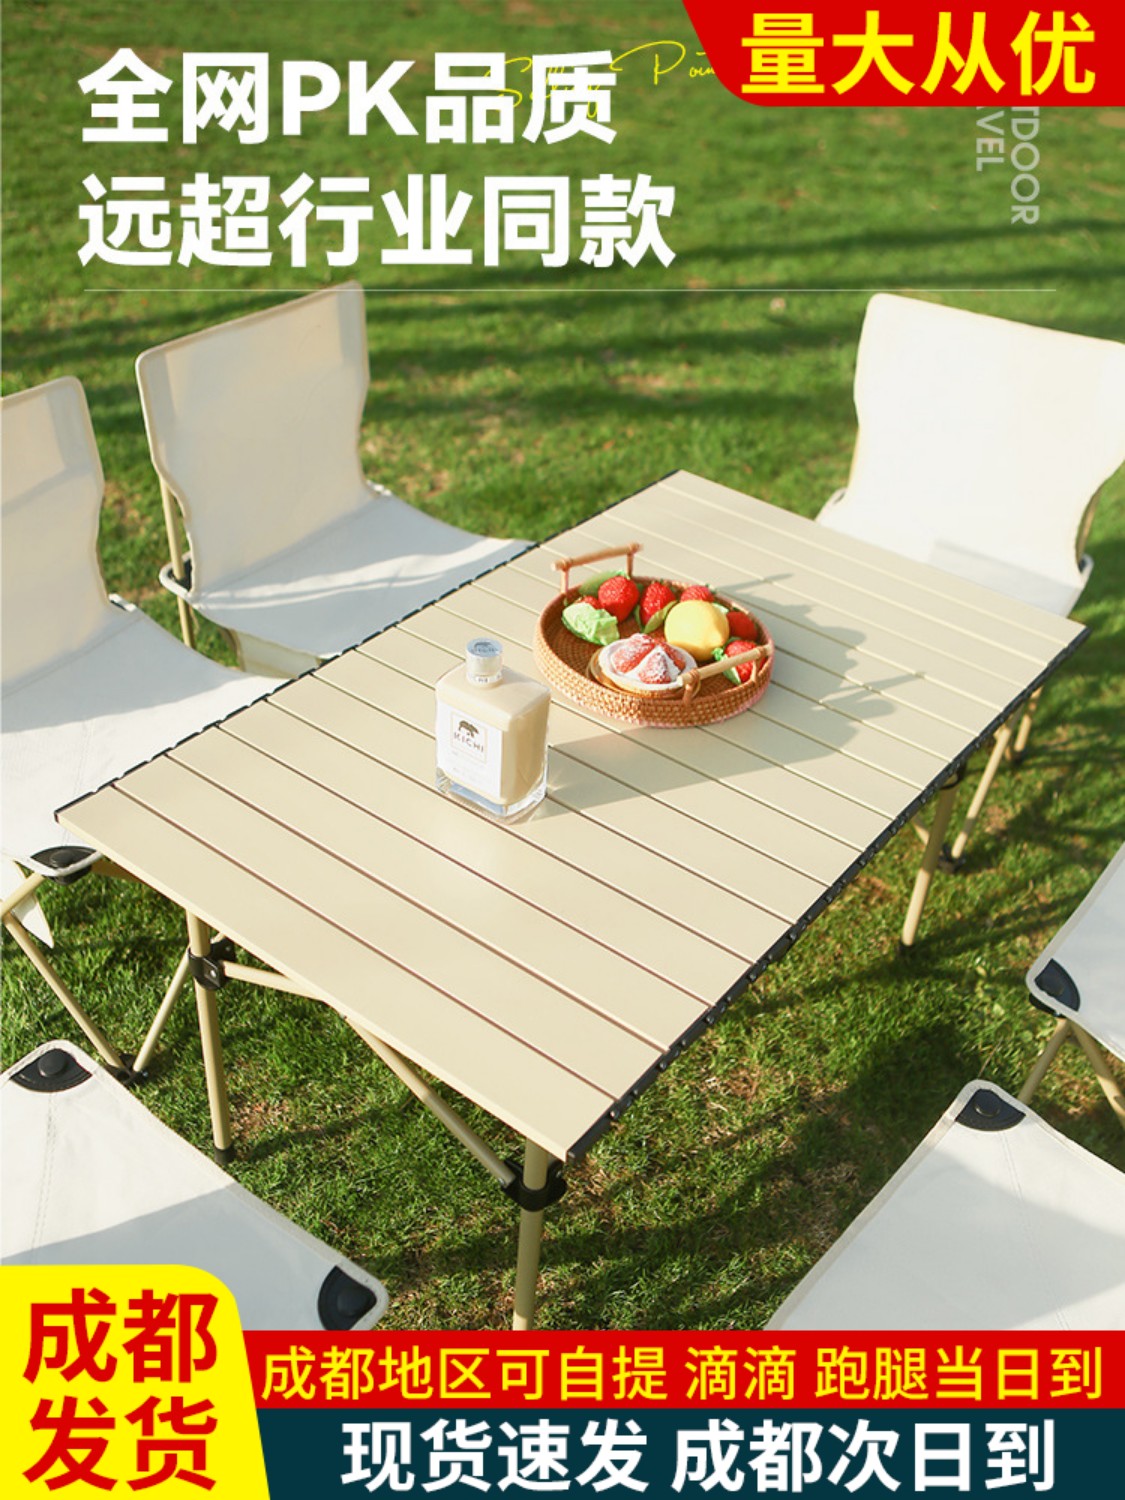 戶外摺疊蛋卷桌椅凳齊全可摺疊桌椅戶外休閒烤肉露營野餐首選